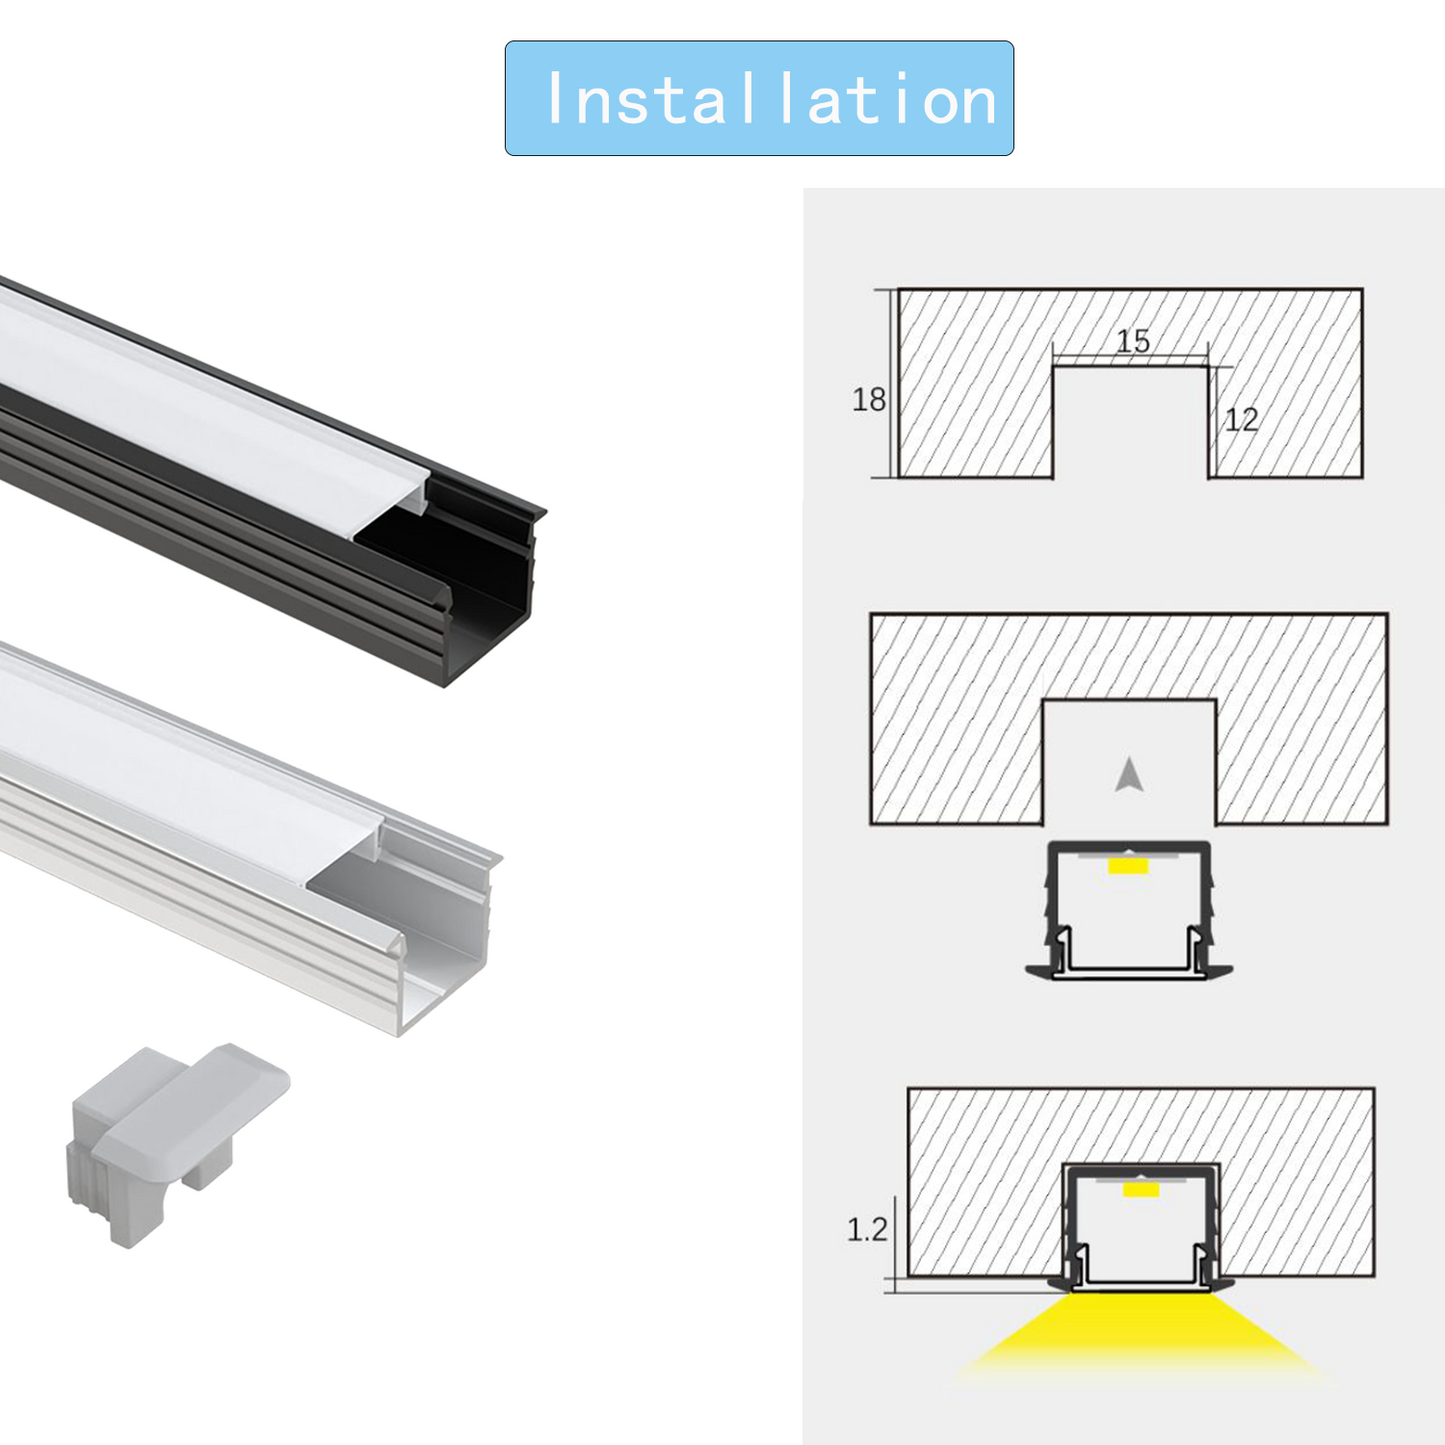 AP45 LED-Aluminiumkanäle AL6063 Einbaukanal für LED-Bandleuchte mit Abdeckung und Endkappe für die Installation von Lichtbändern, 18 x 12 mm